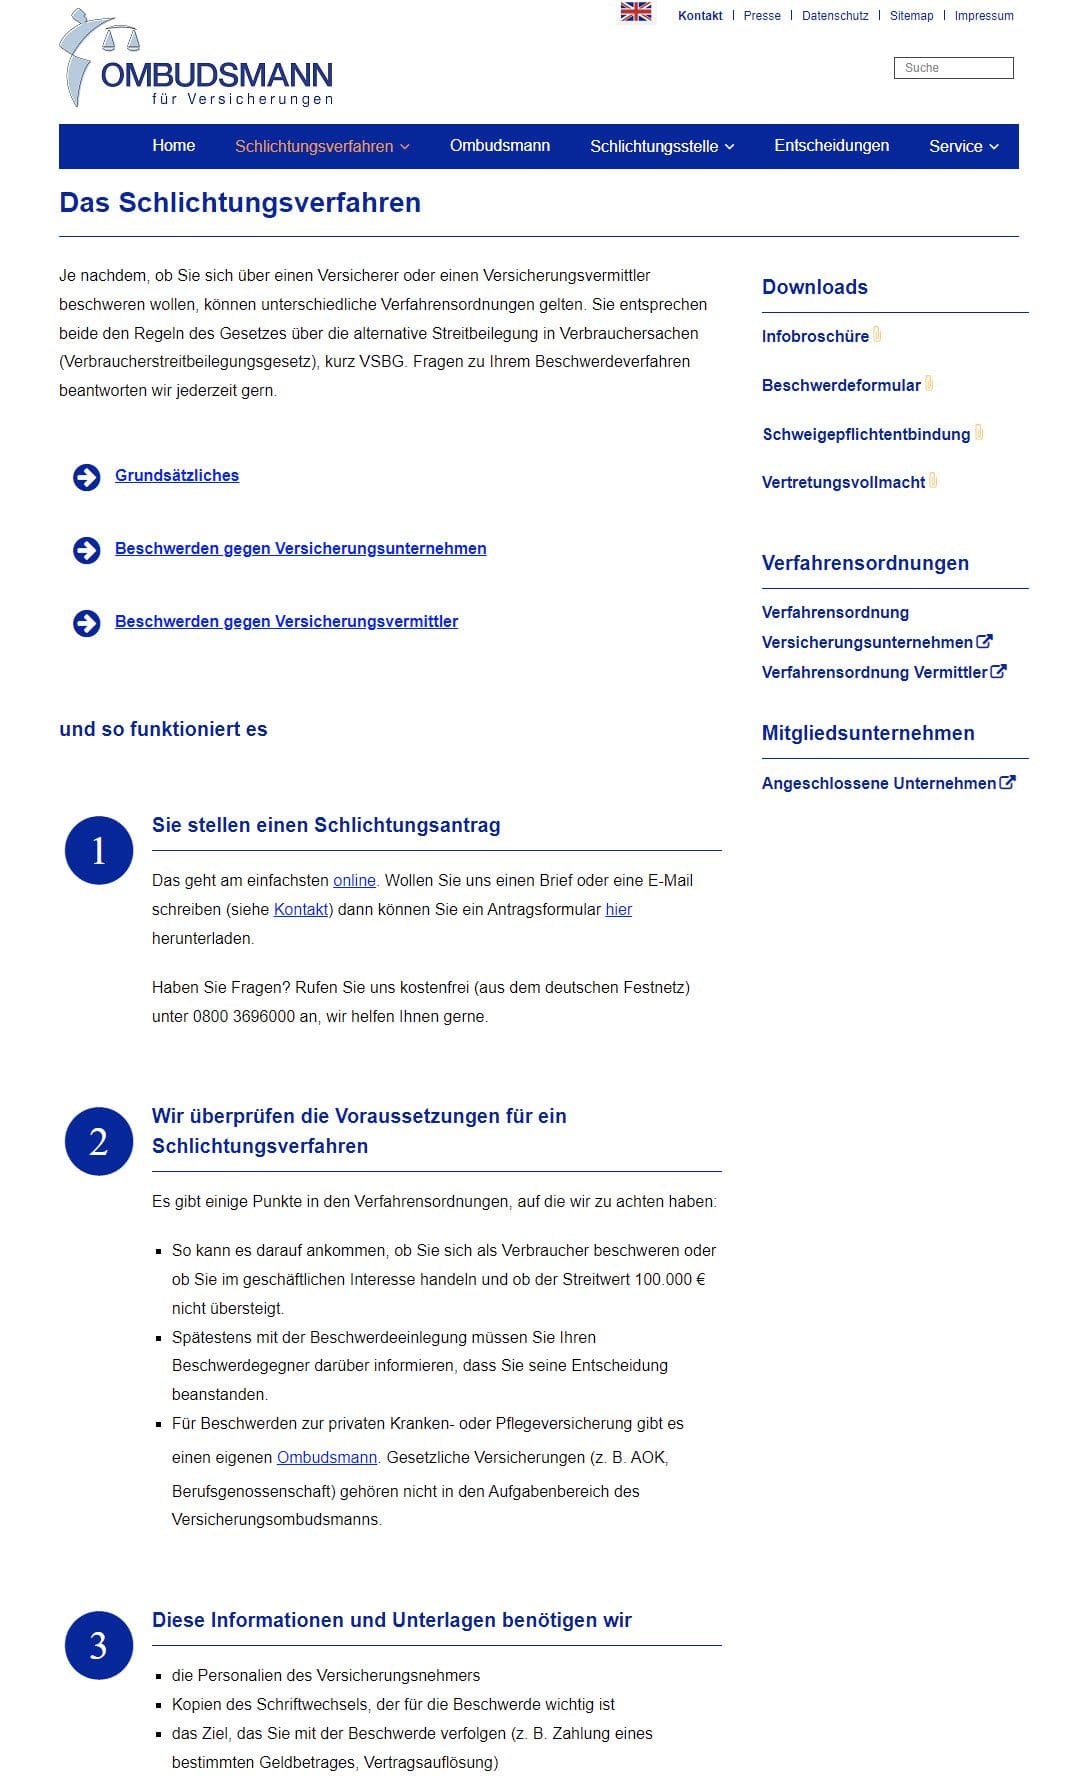 Die Website des Ombudsmannes für Versicherungen informiert über Voraussetzungen und Ablauf des Schlichtungsverfahrens (Screenshot versicherungsombudsmann.de/das-schlichtungsverfahren/ am 11.03.2022)